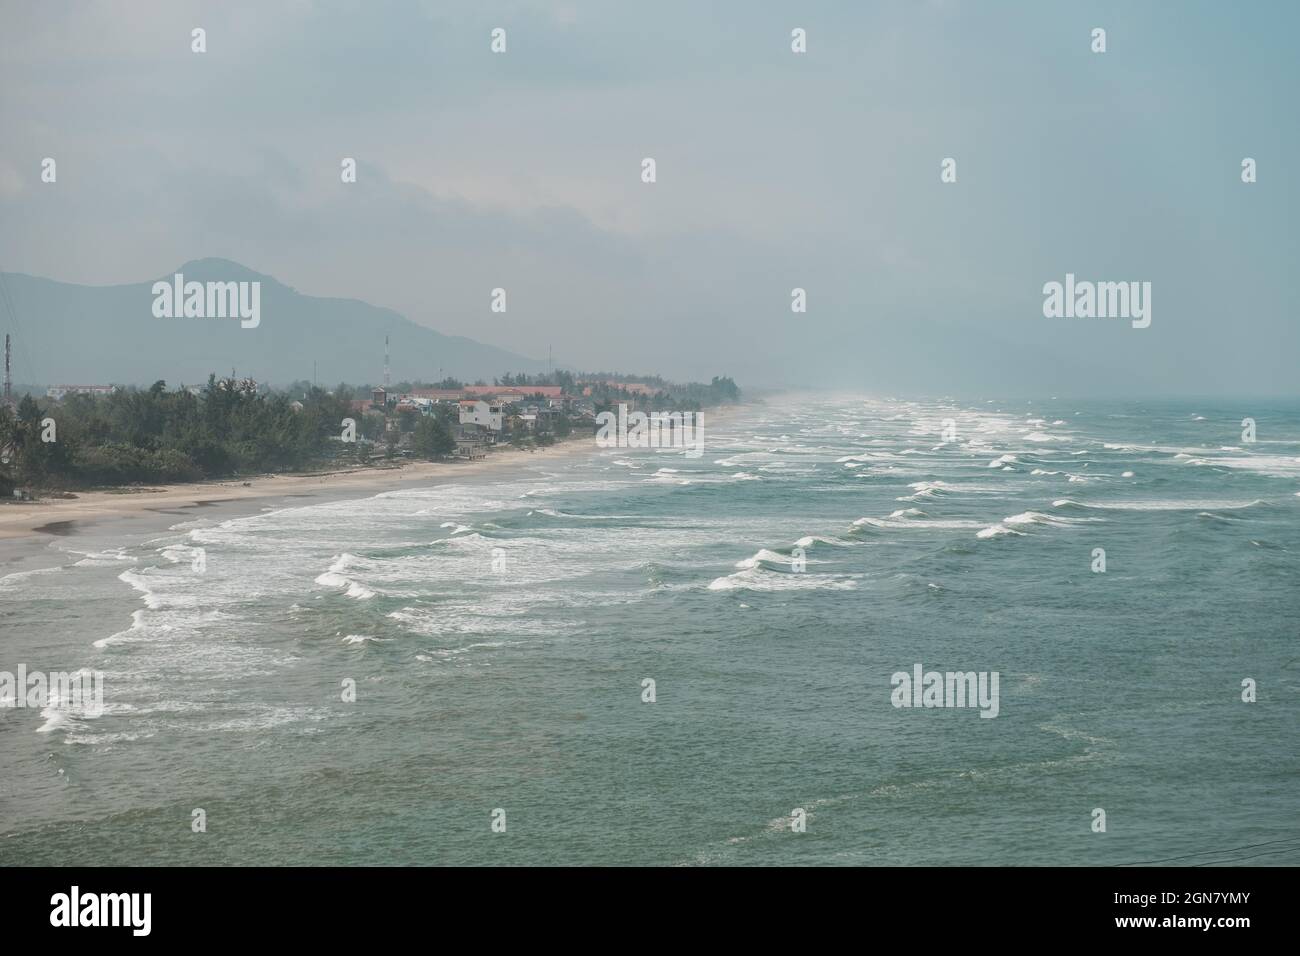 Vue panoramique sur la mer qui fait rage pendant une tempête au Vietnam. Seascape au Vietnam. Photo de haute qualité Banque D'Images